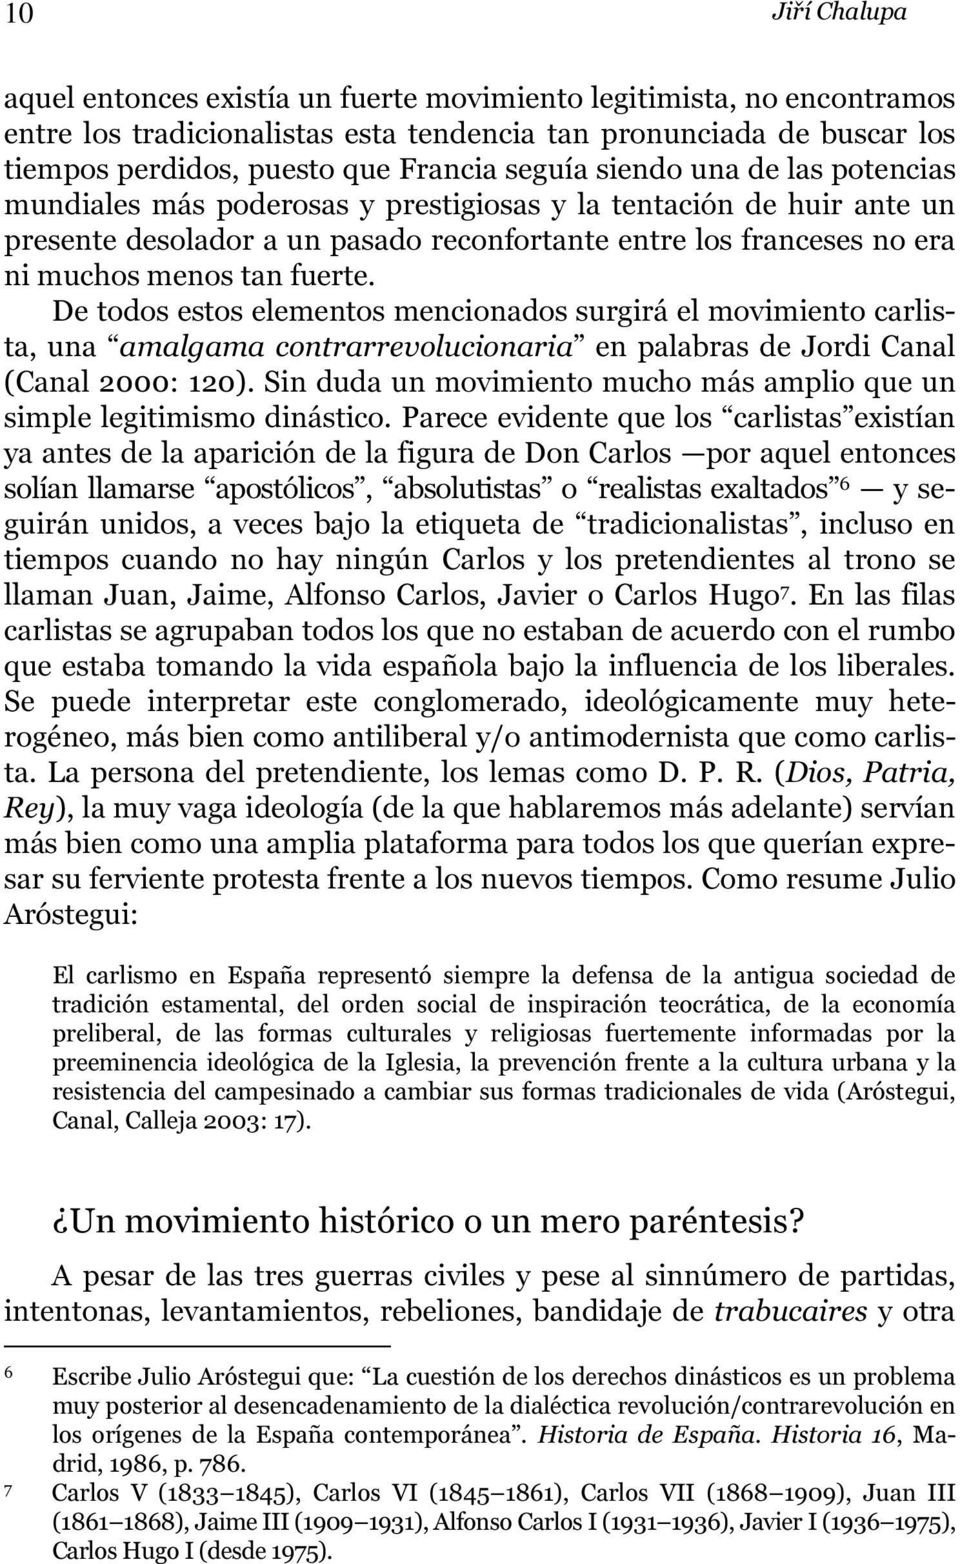 fuerte. De todos estos elementos mencionados surgirá el movimiento carlista, una amalgama contrarrevolucionaria en palabras de Jordi Canal (Canal 2000: 120).